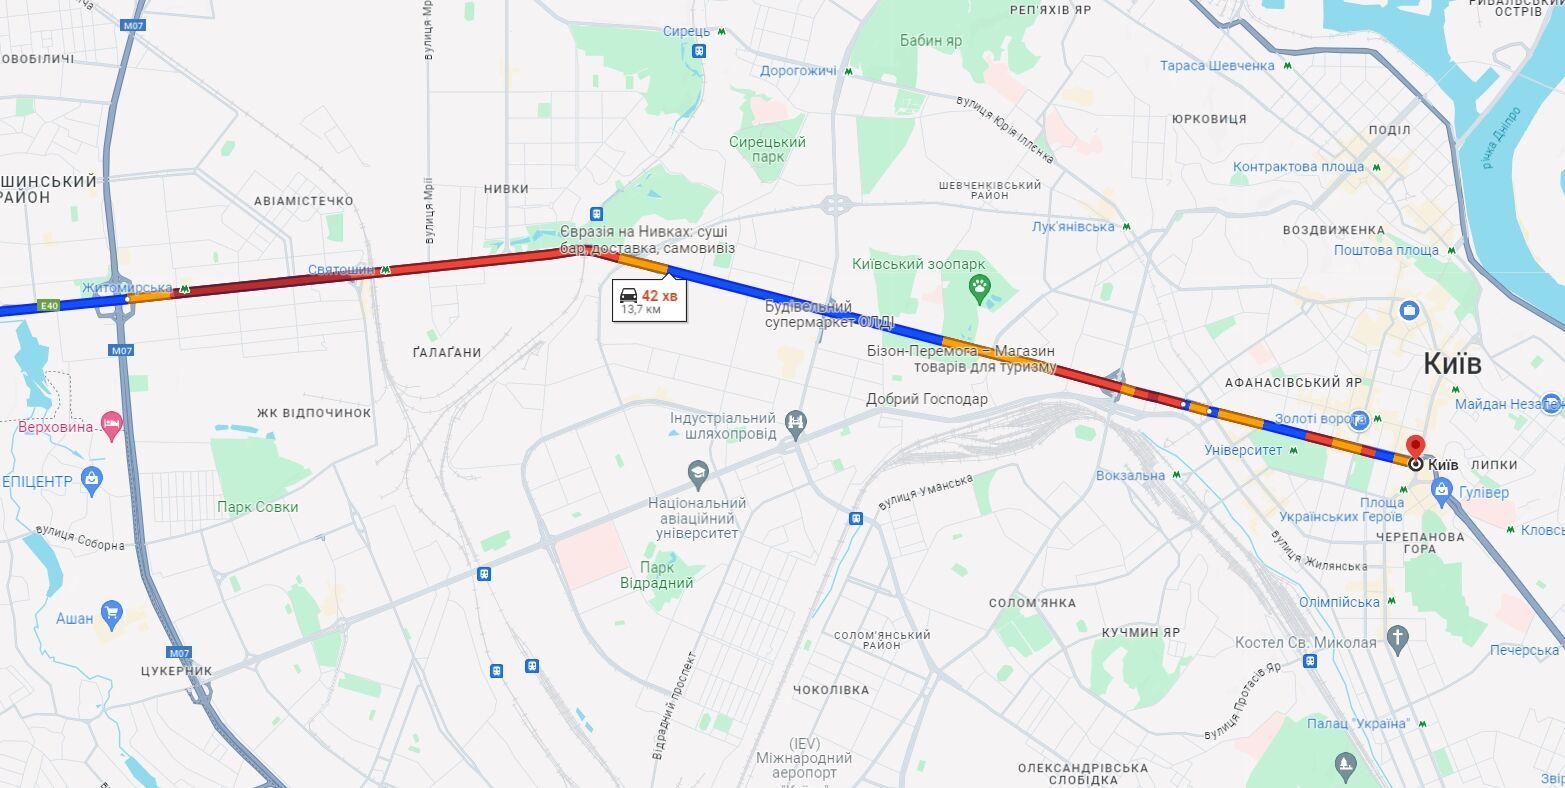 У Києві на дорогах утворилися ранкові затори: де ускладнено рух авто. Карта